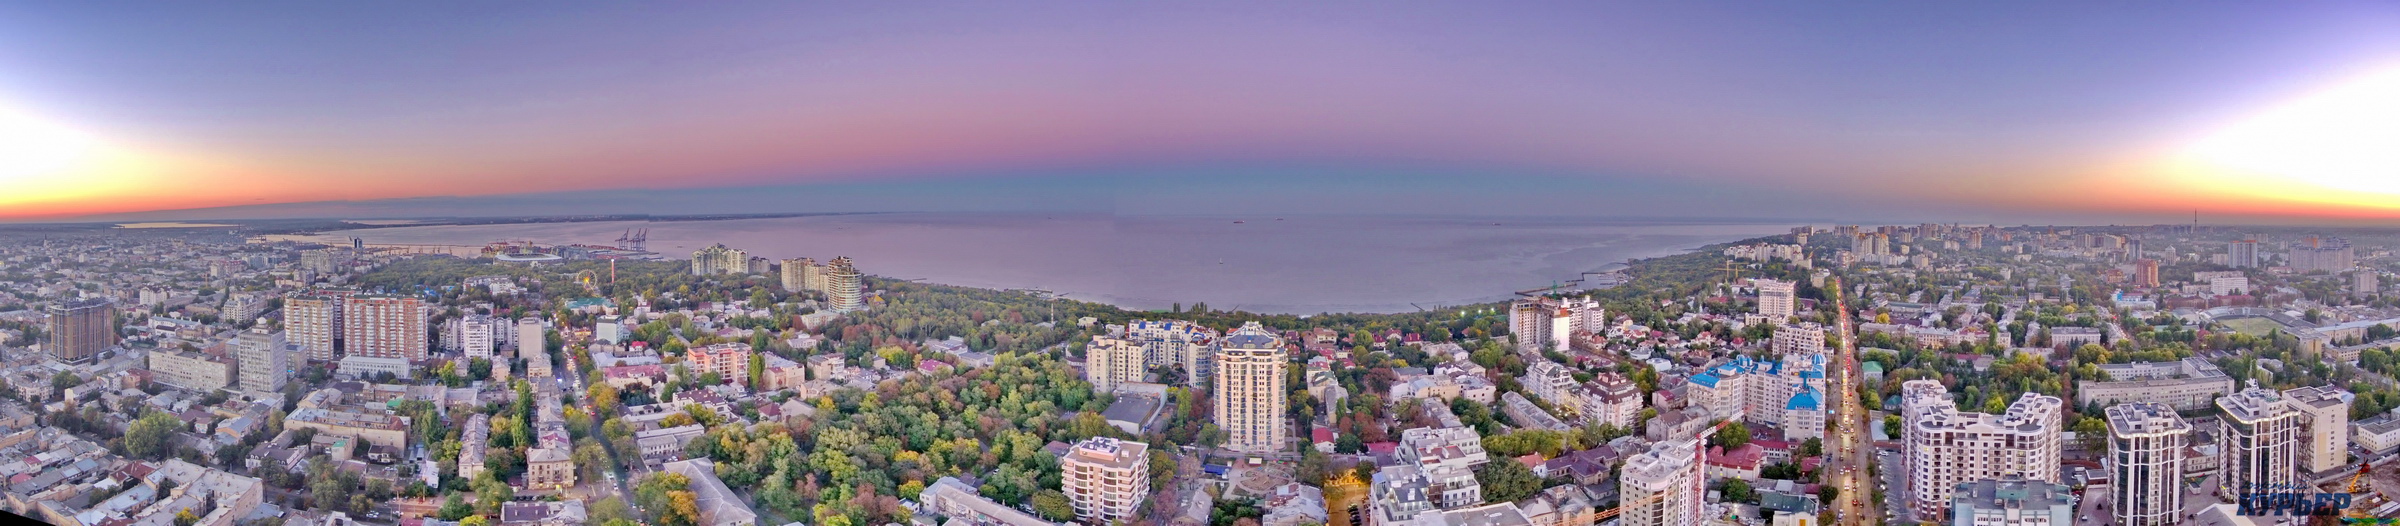 Одесса панорама